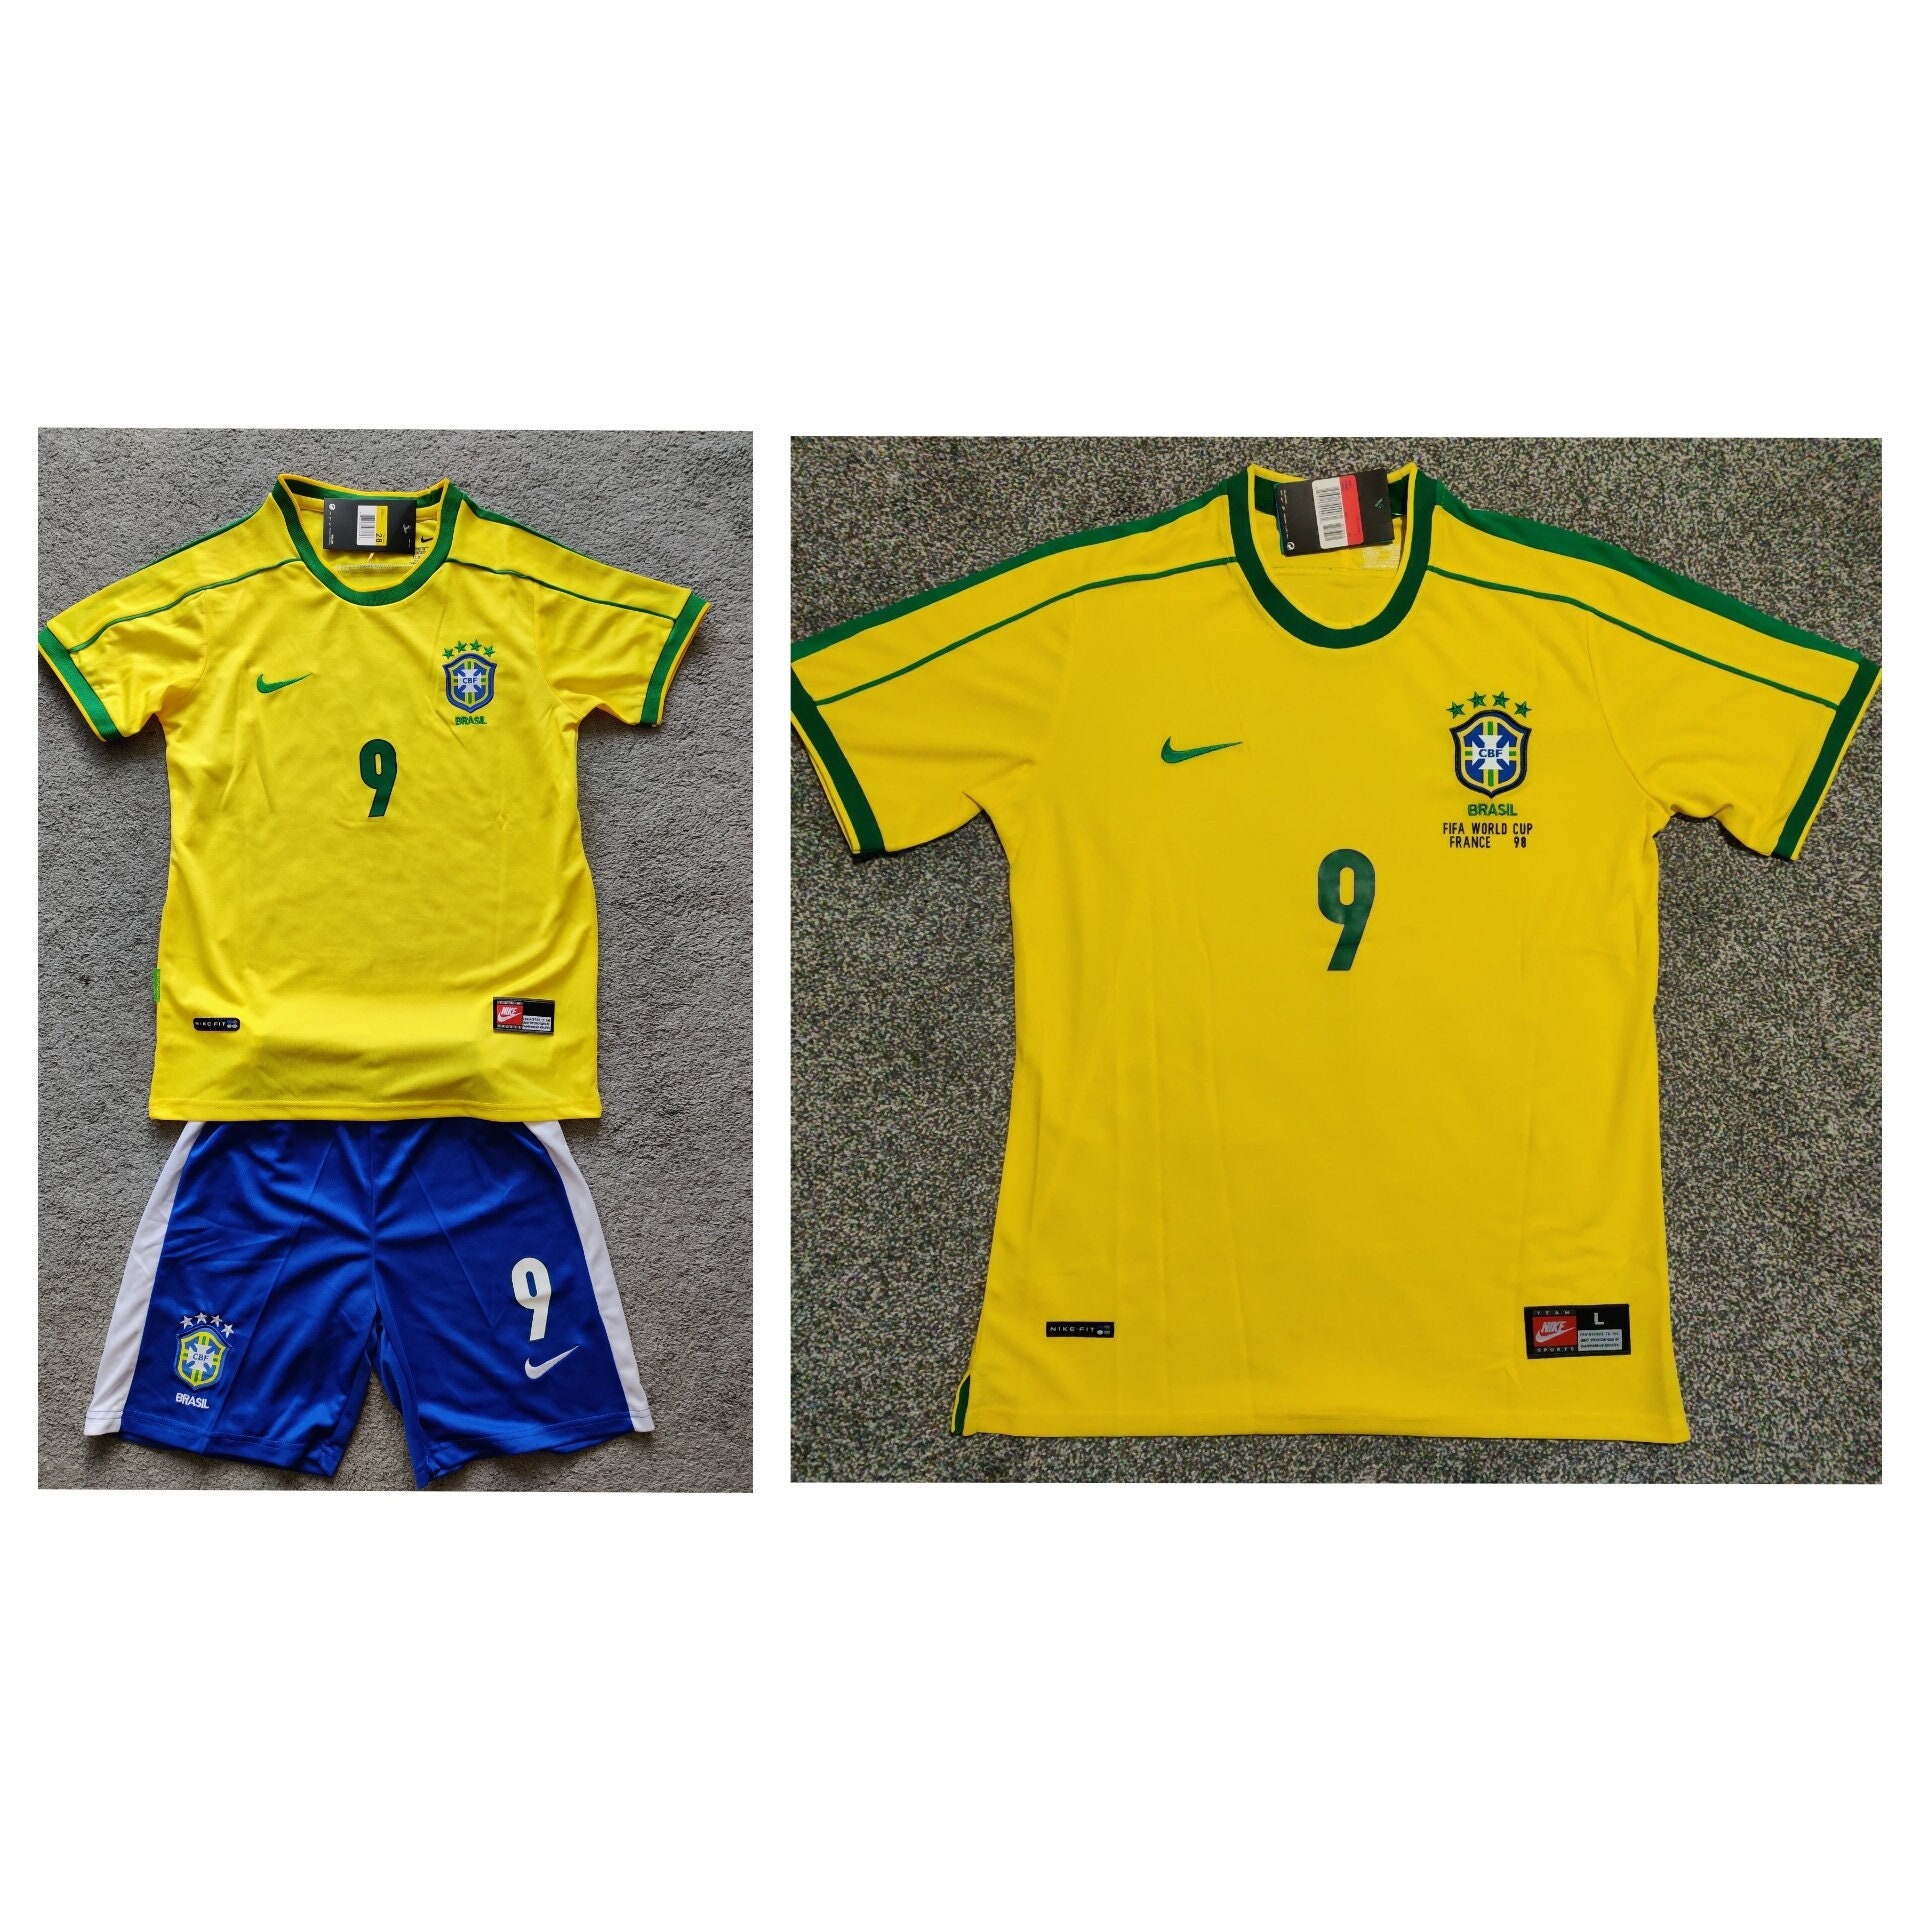 Brazil Women's Baby Tee, Brasil Soccer Ringer T Shirt, Navy Jersey T-shirt  With Brazilian Flag and Stars 